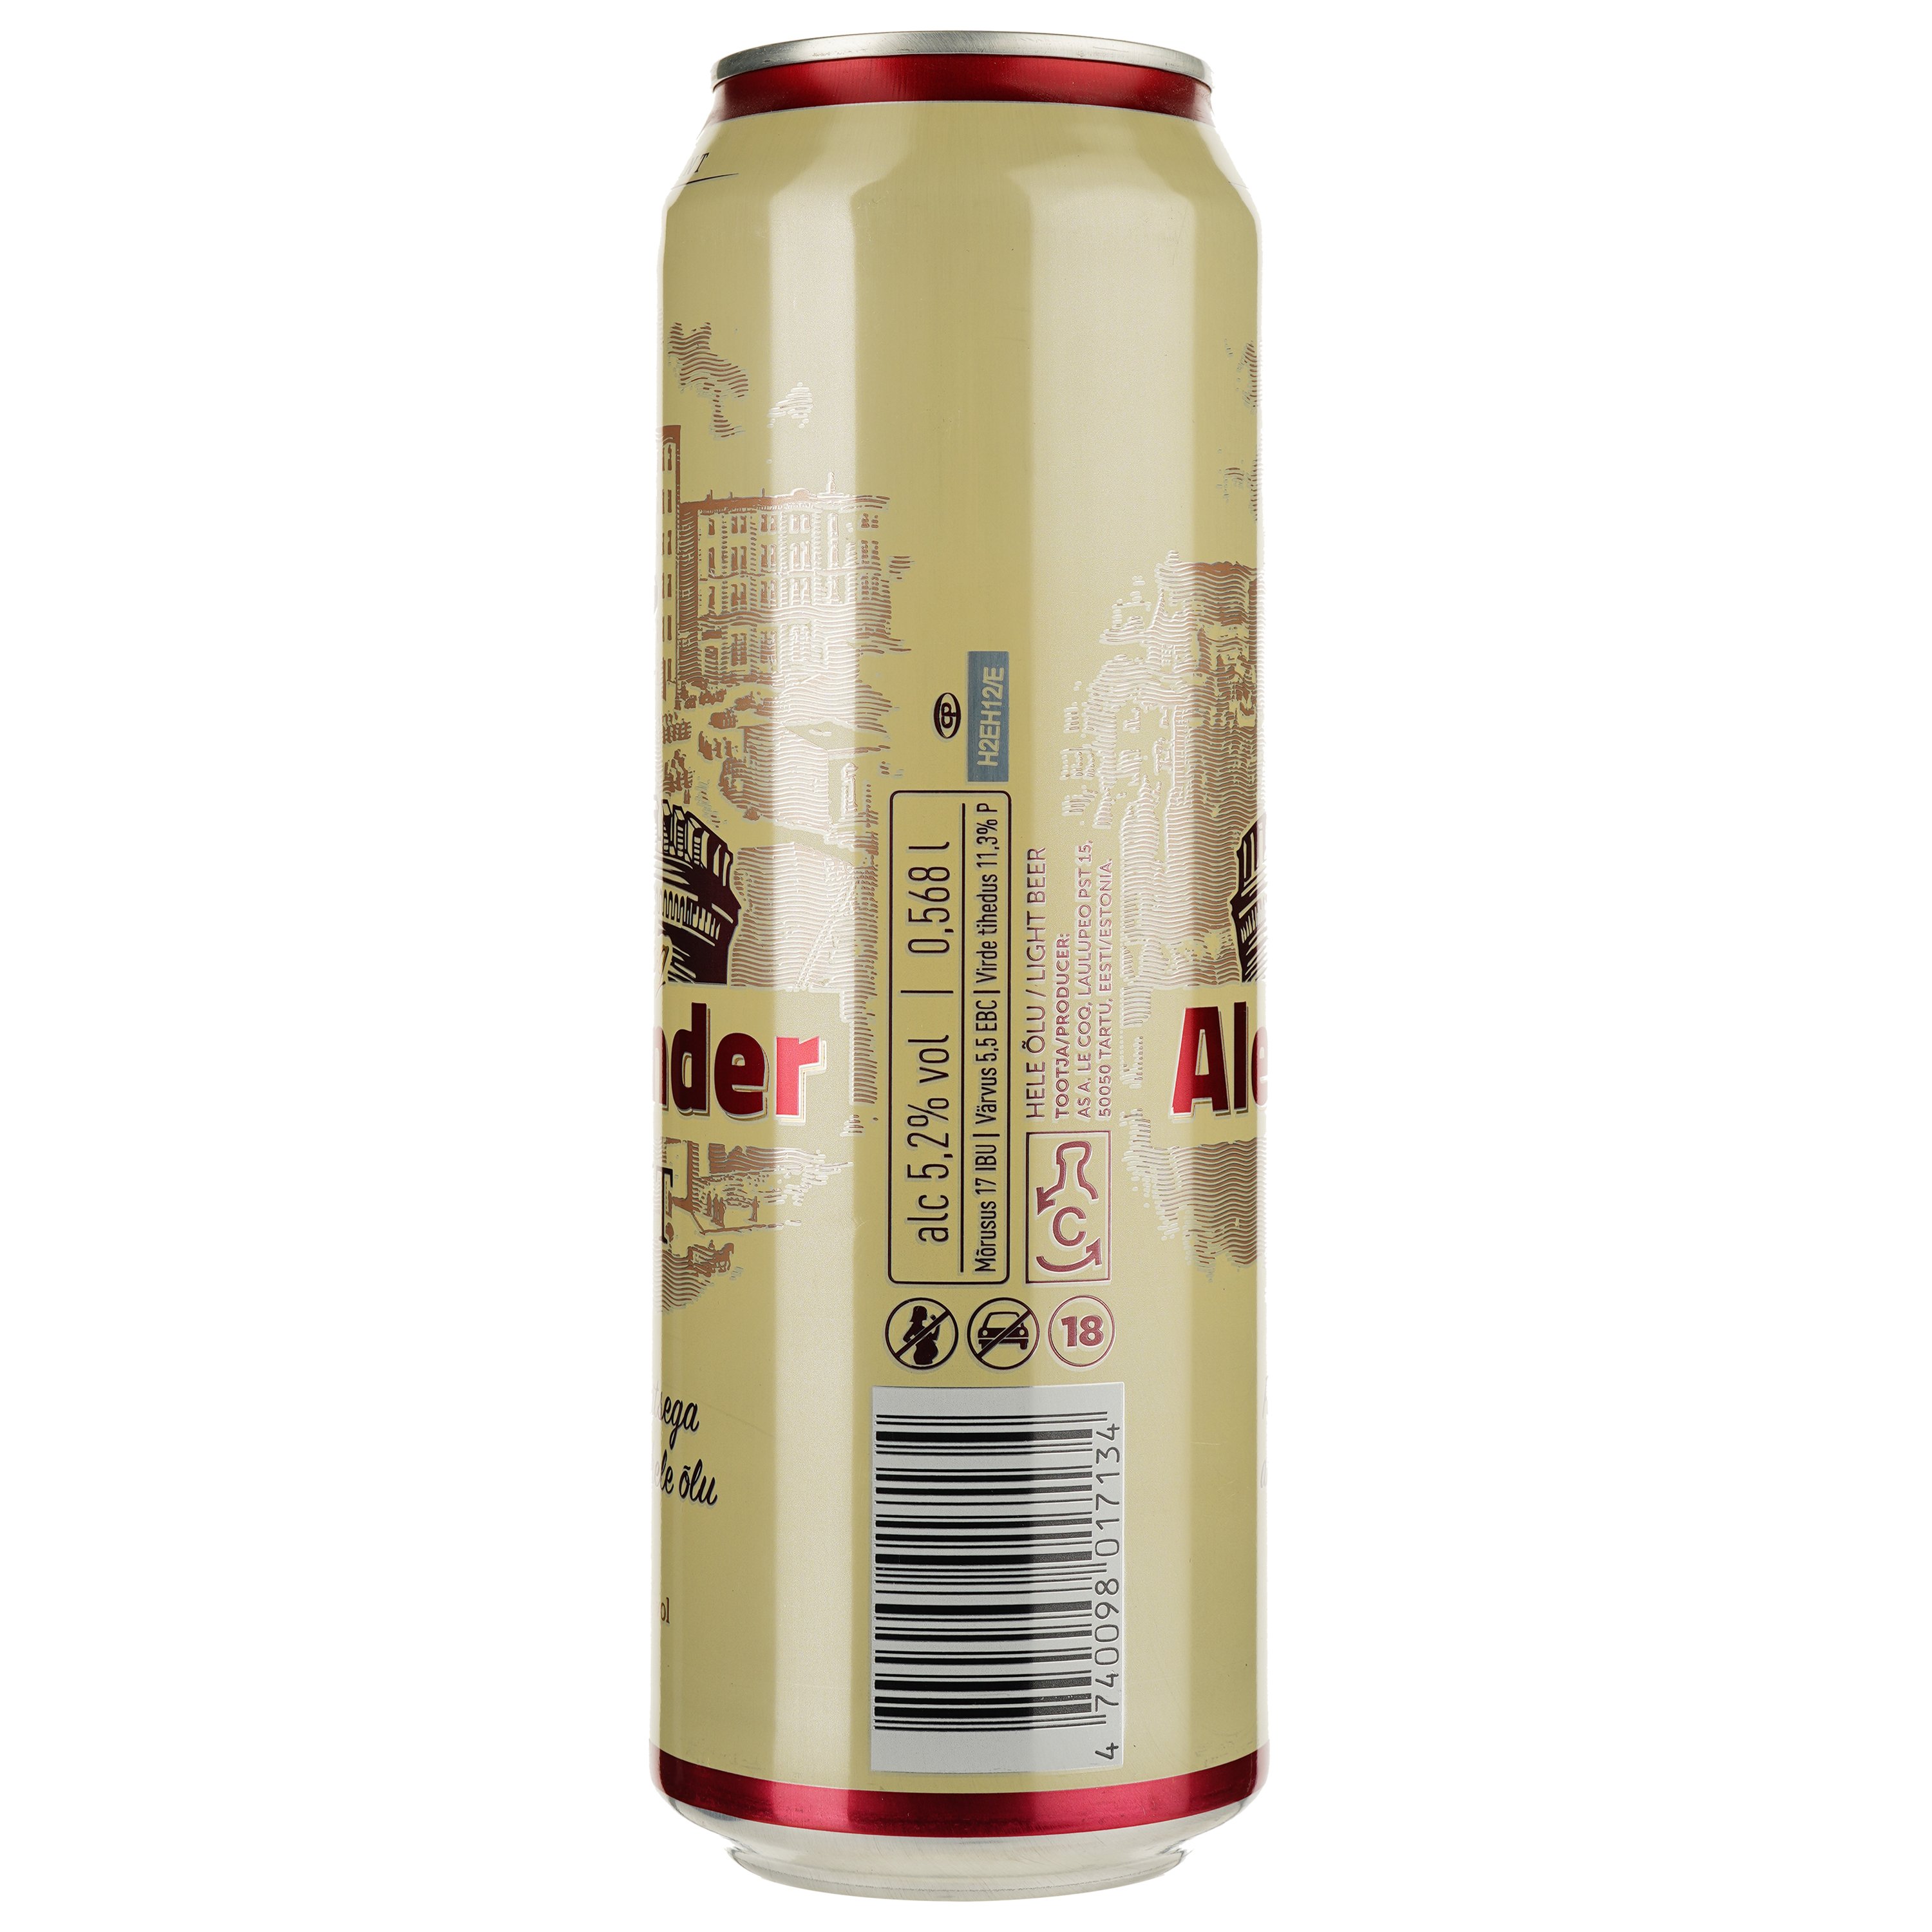 Пиво A. Le Coq Alexander, світле, фільтроване, 5,2%, з/б, 0,568 л - фото 2